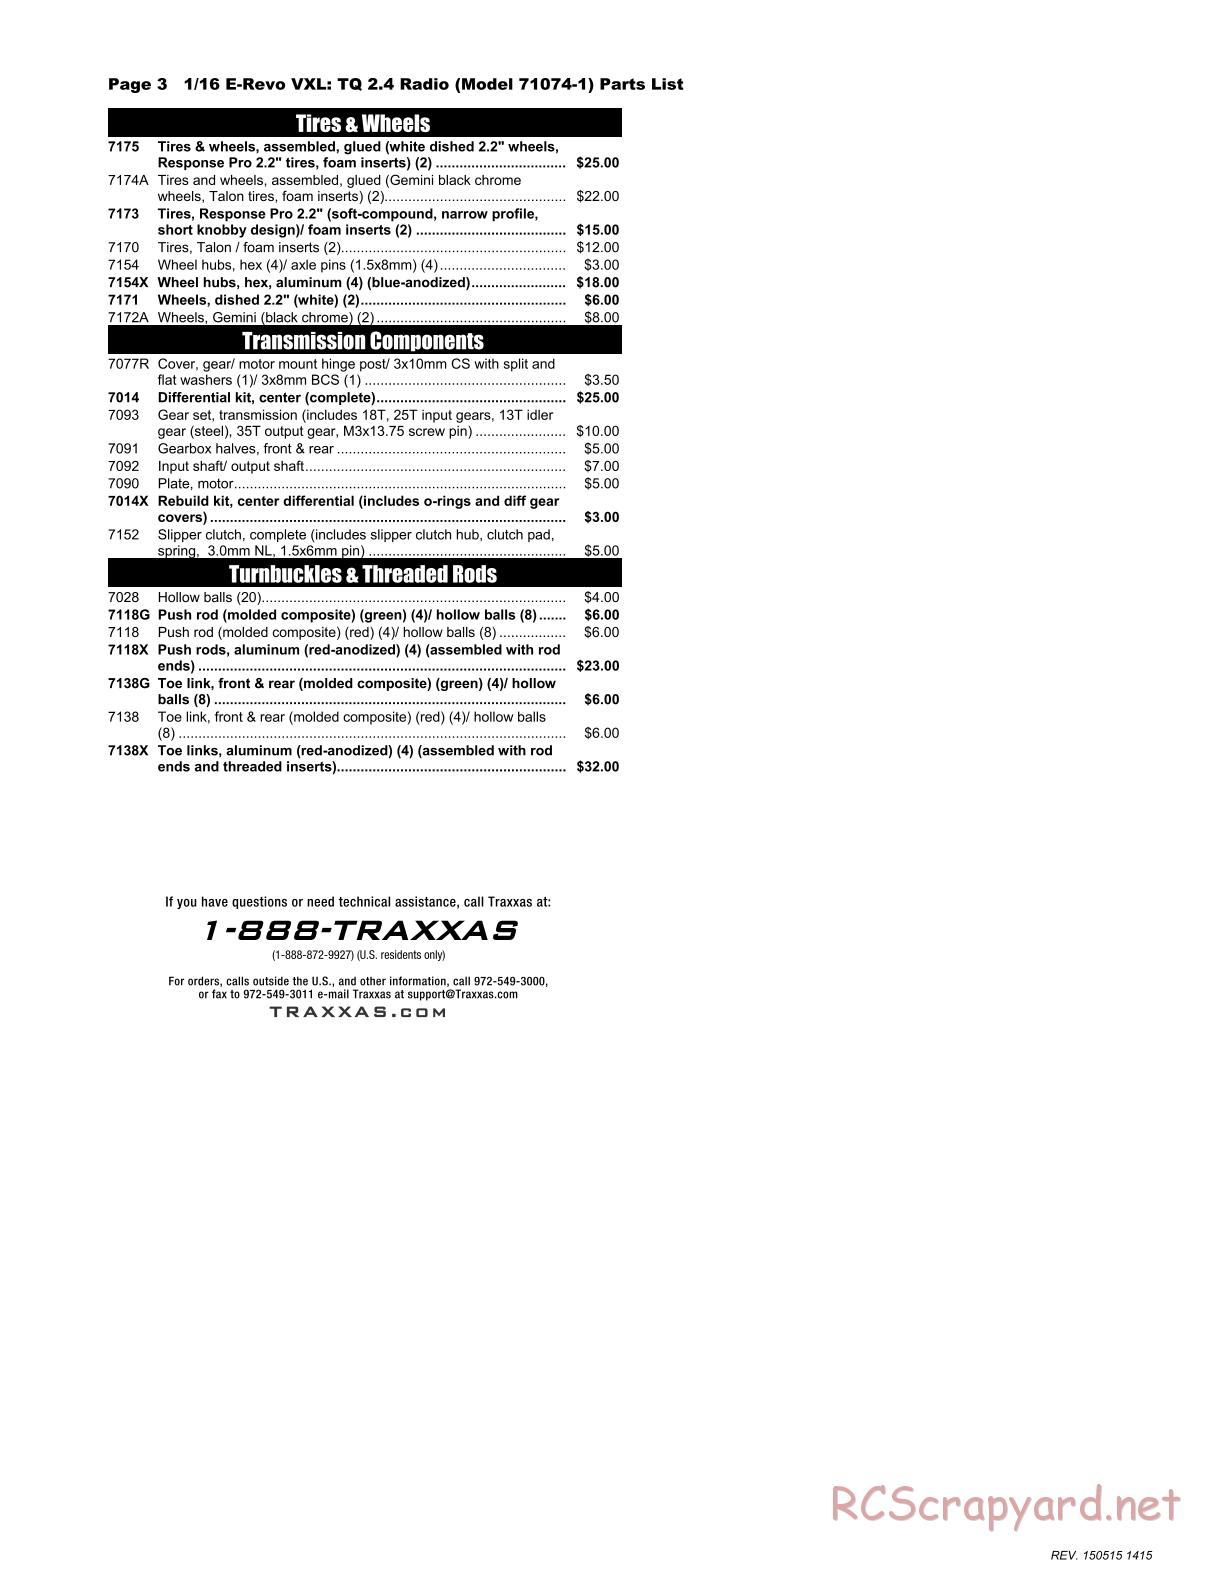 Traxxas - 1/16 E-Revo VXL (2015) - Parts List - Page 3